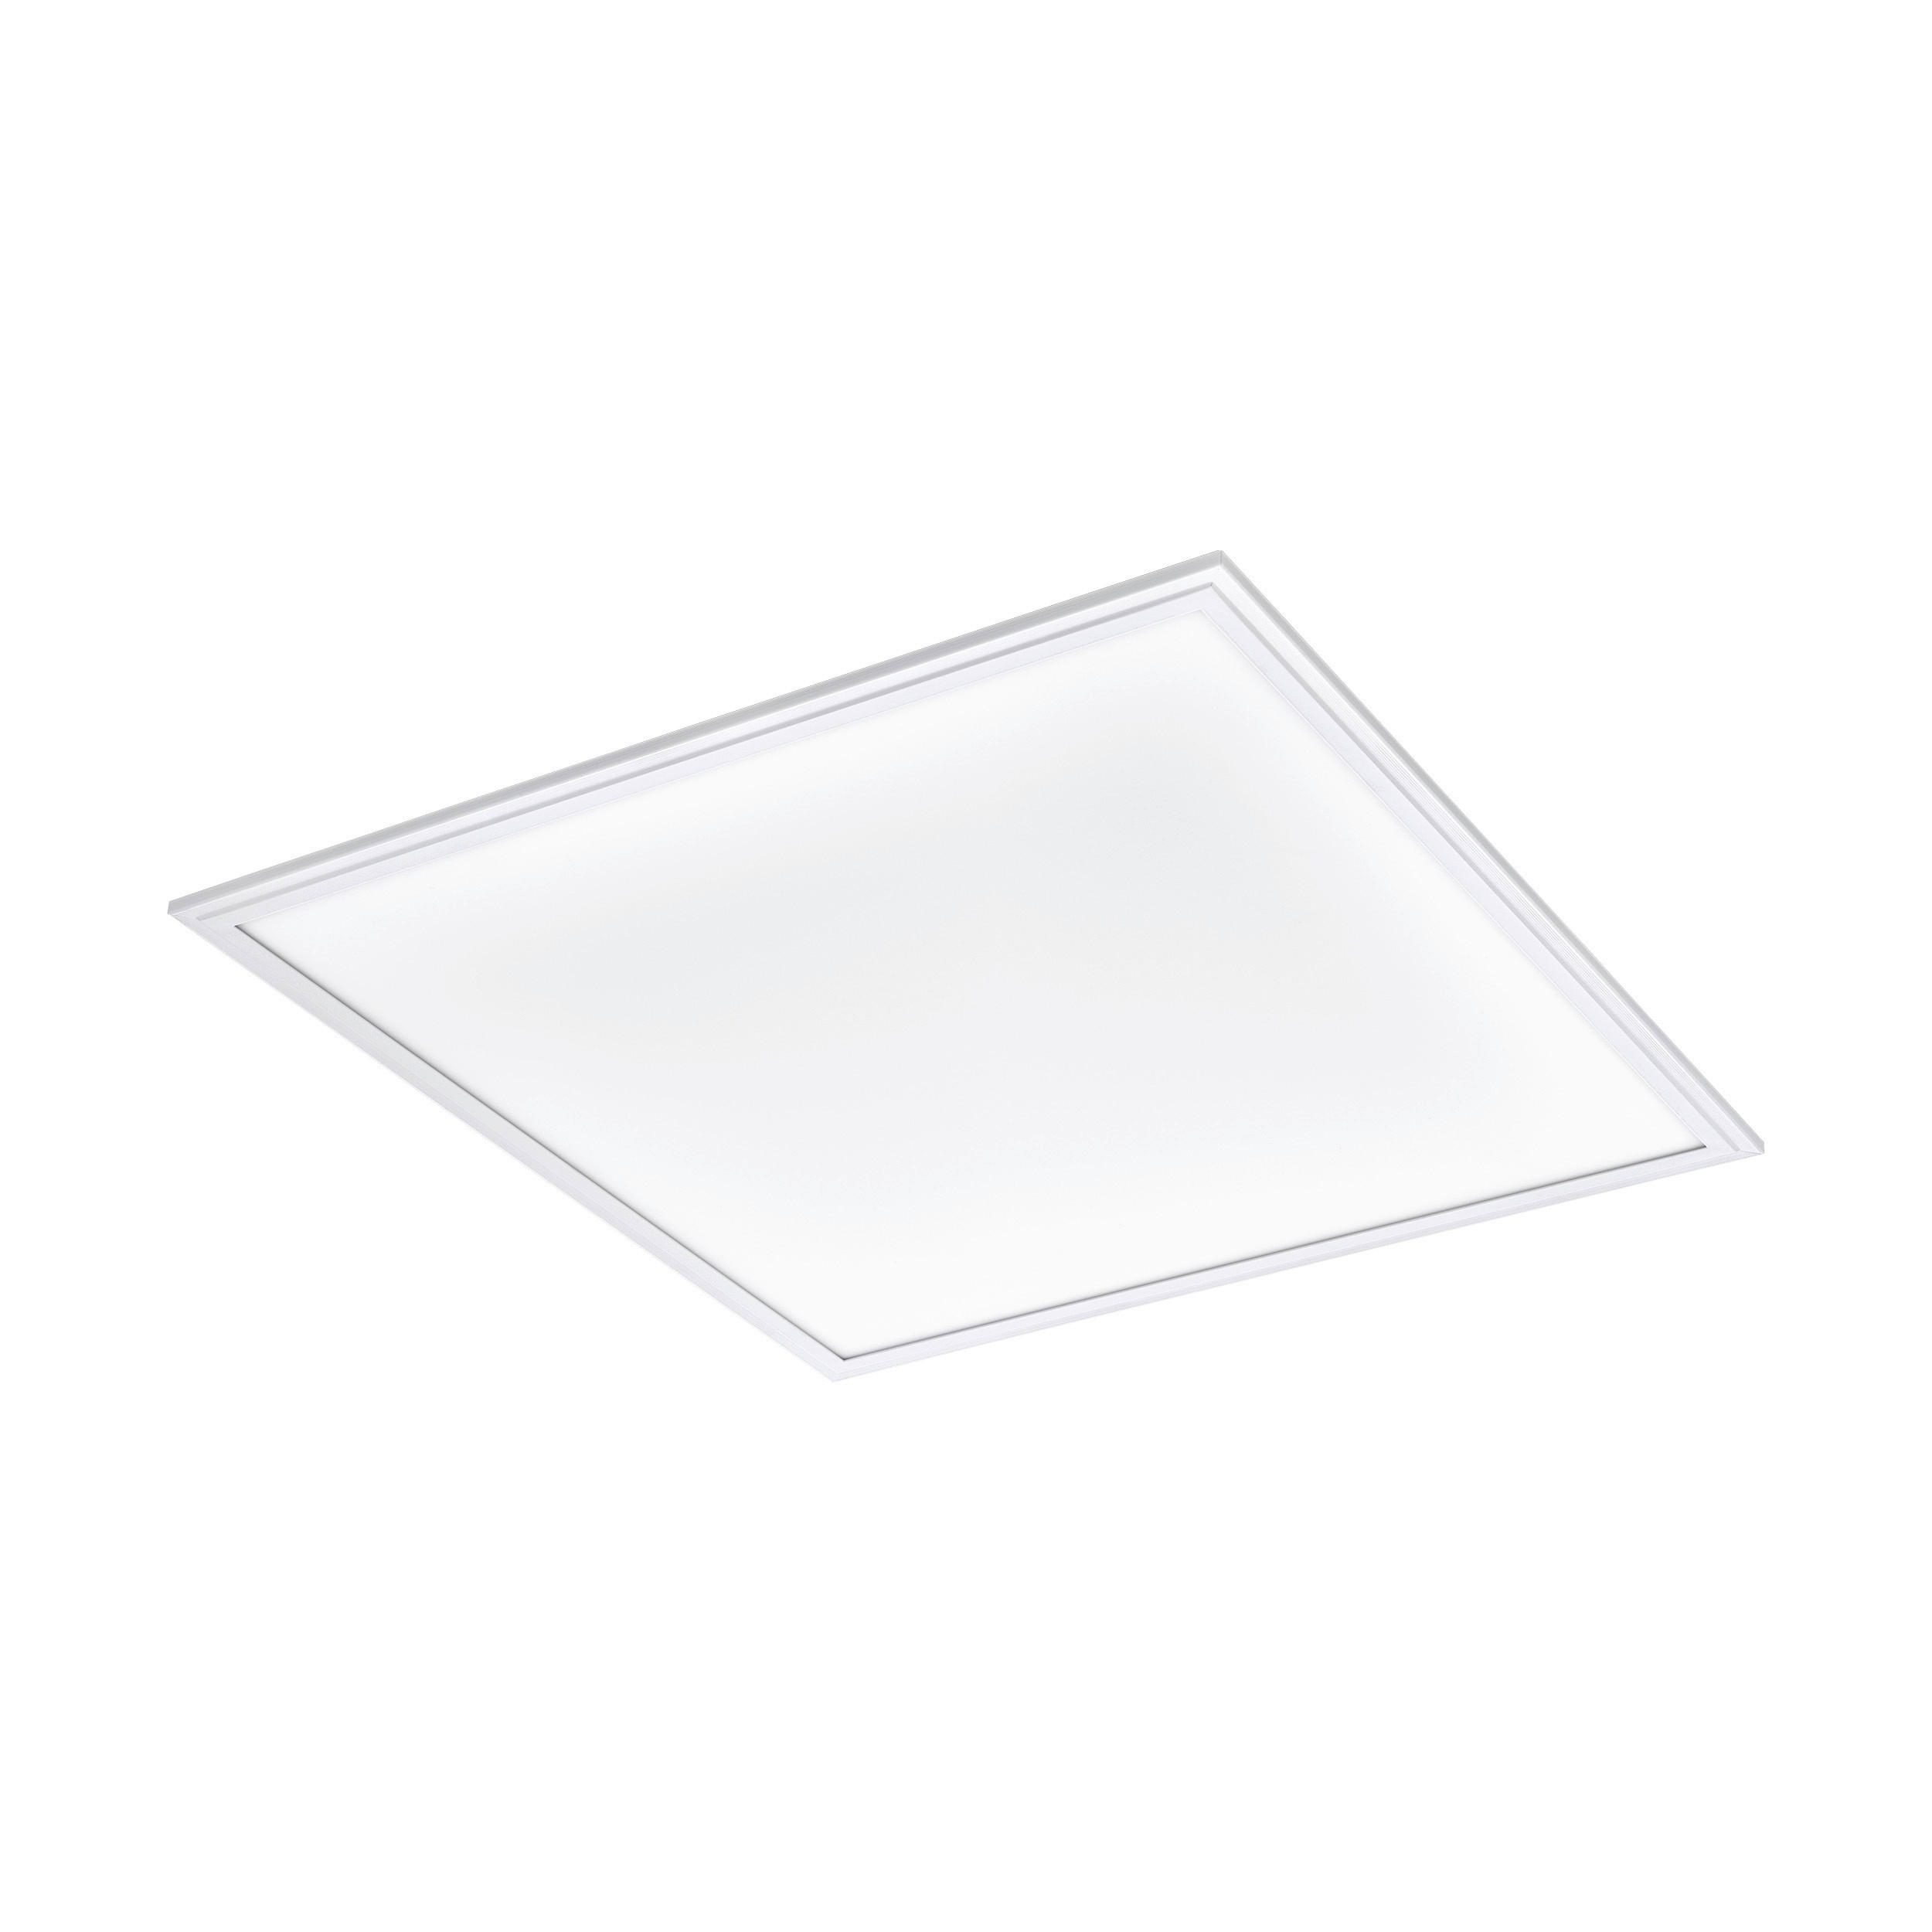 LED-DECKENLEUCHTE 59,5/59,5/5 cm    - Weiß, Design, Kunststoff/Metall (59,5/59,5/5cm)